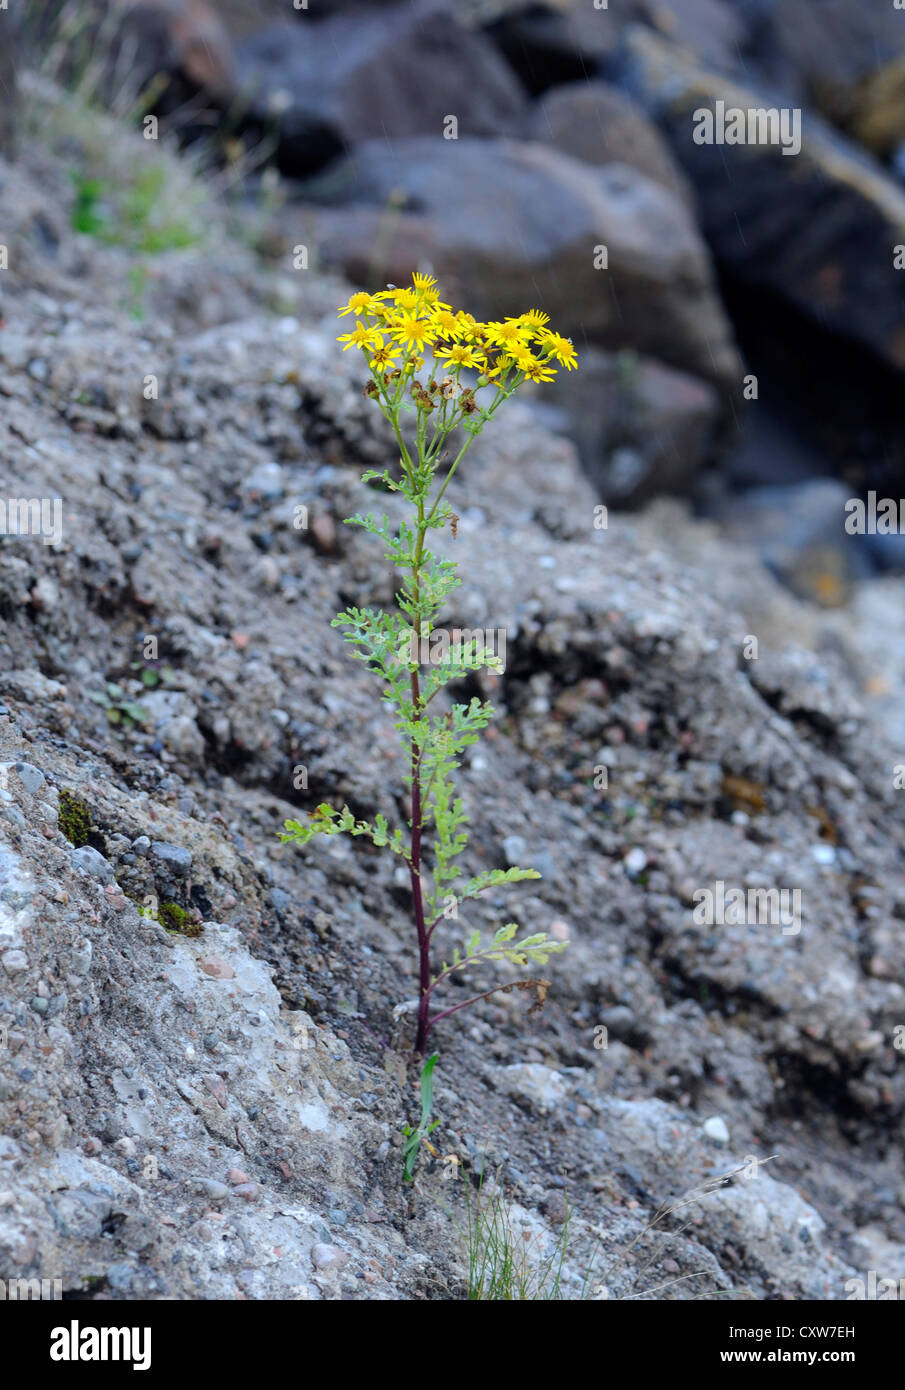 Un comune erba tossica (Senecio jacobaea) pianta cresce su una recente frana di fango. Tobermory, Isle of Mull, Argyll and Bute, Scotland, Regno Unito. Foto Stock